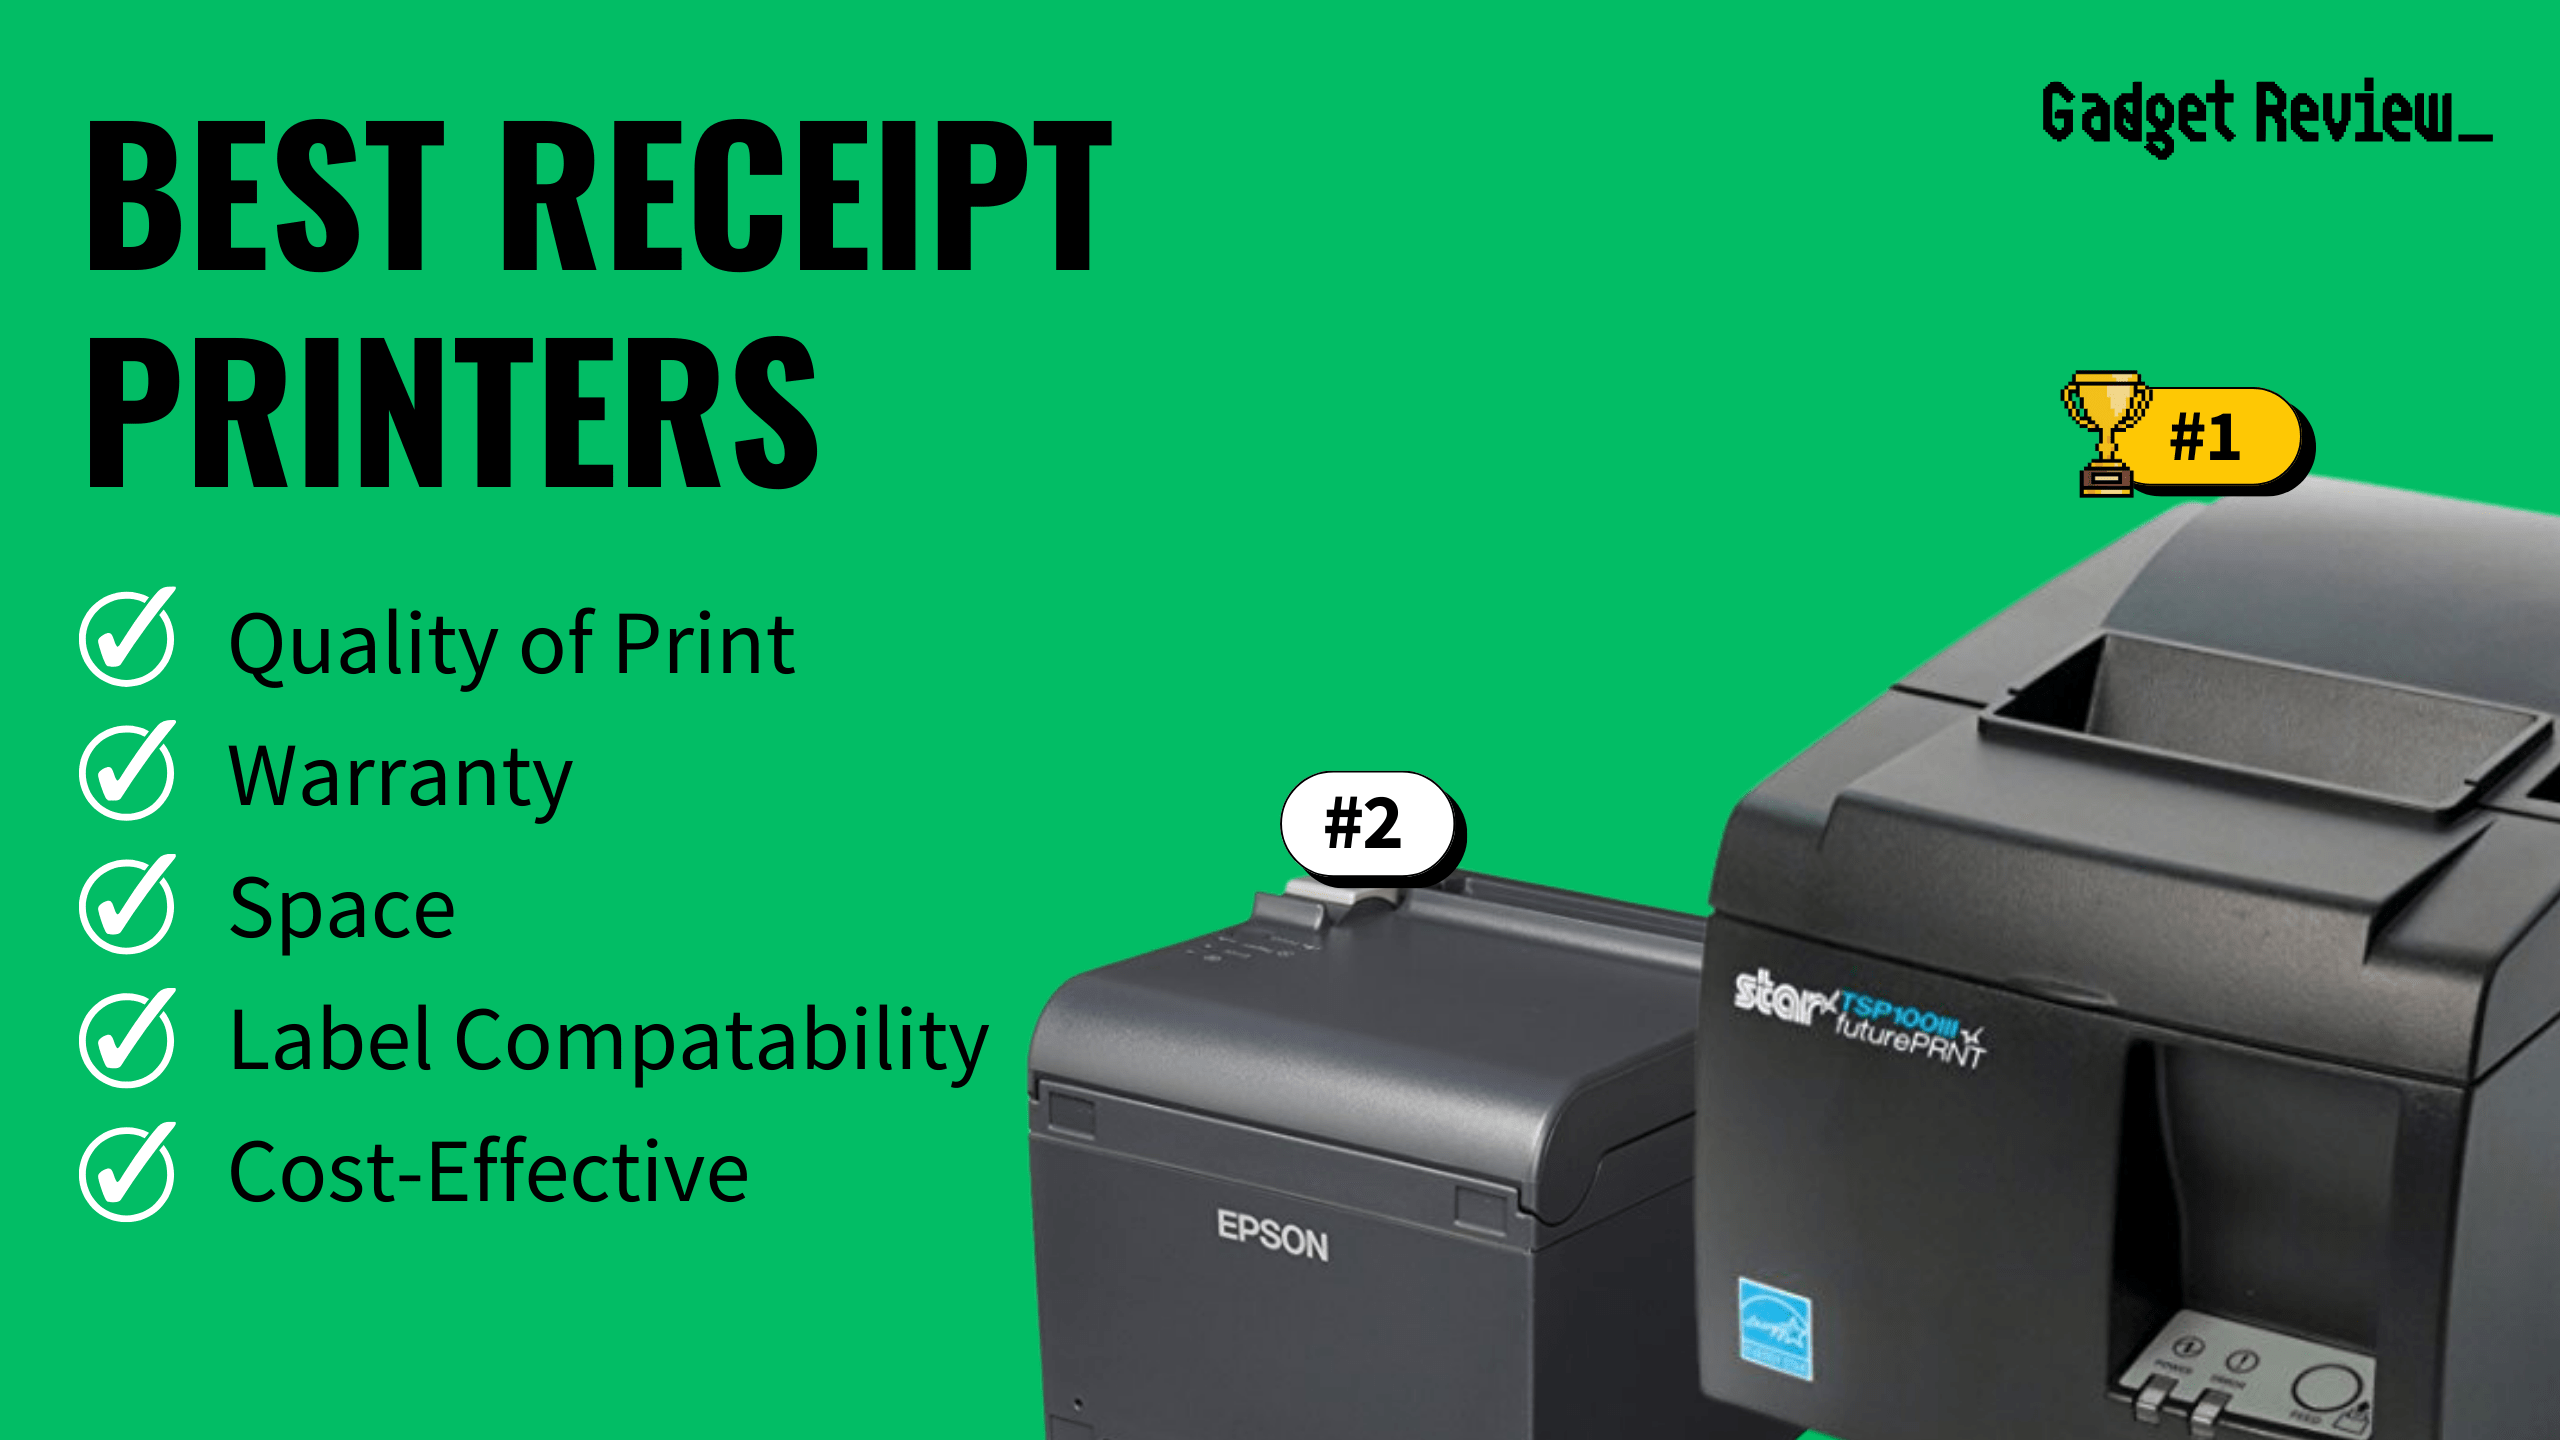 Best Receipt Printers